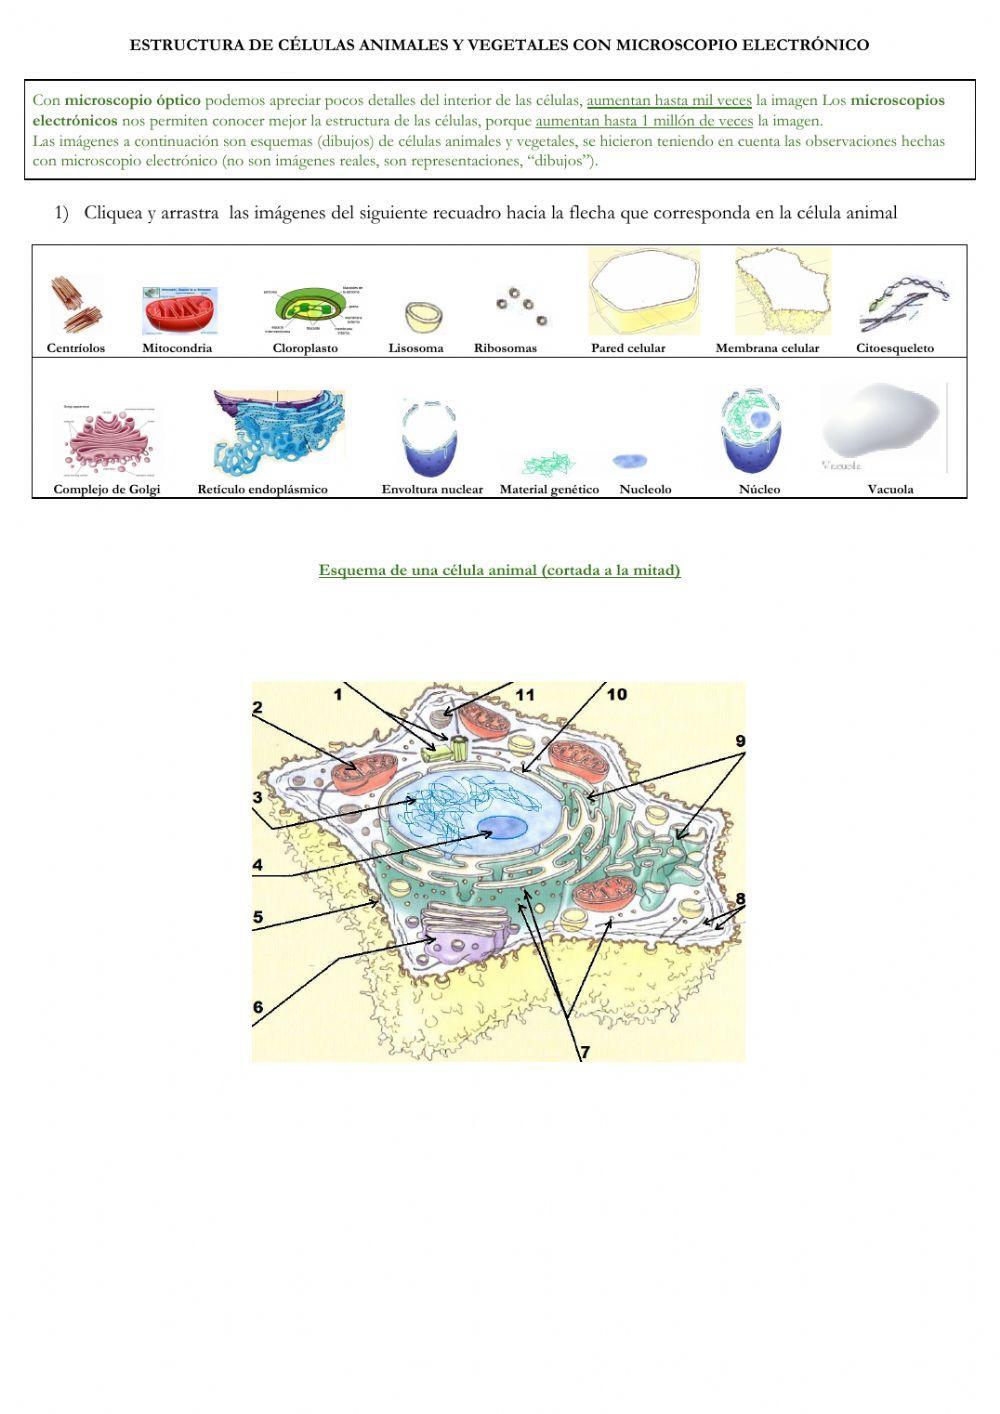 Estructura de células animal y vegetal